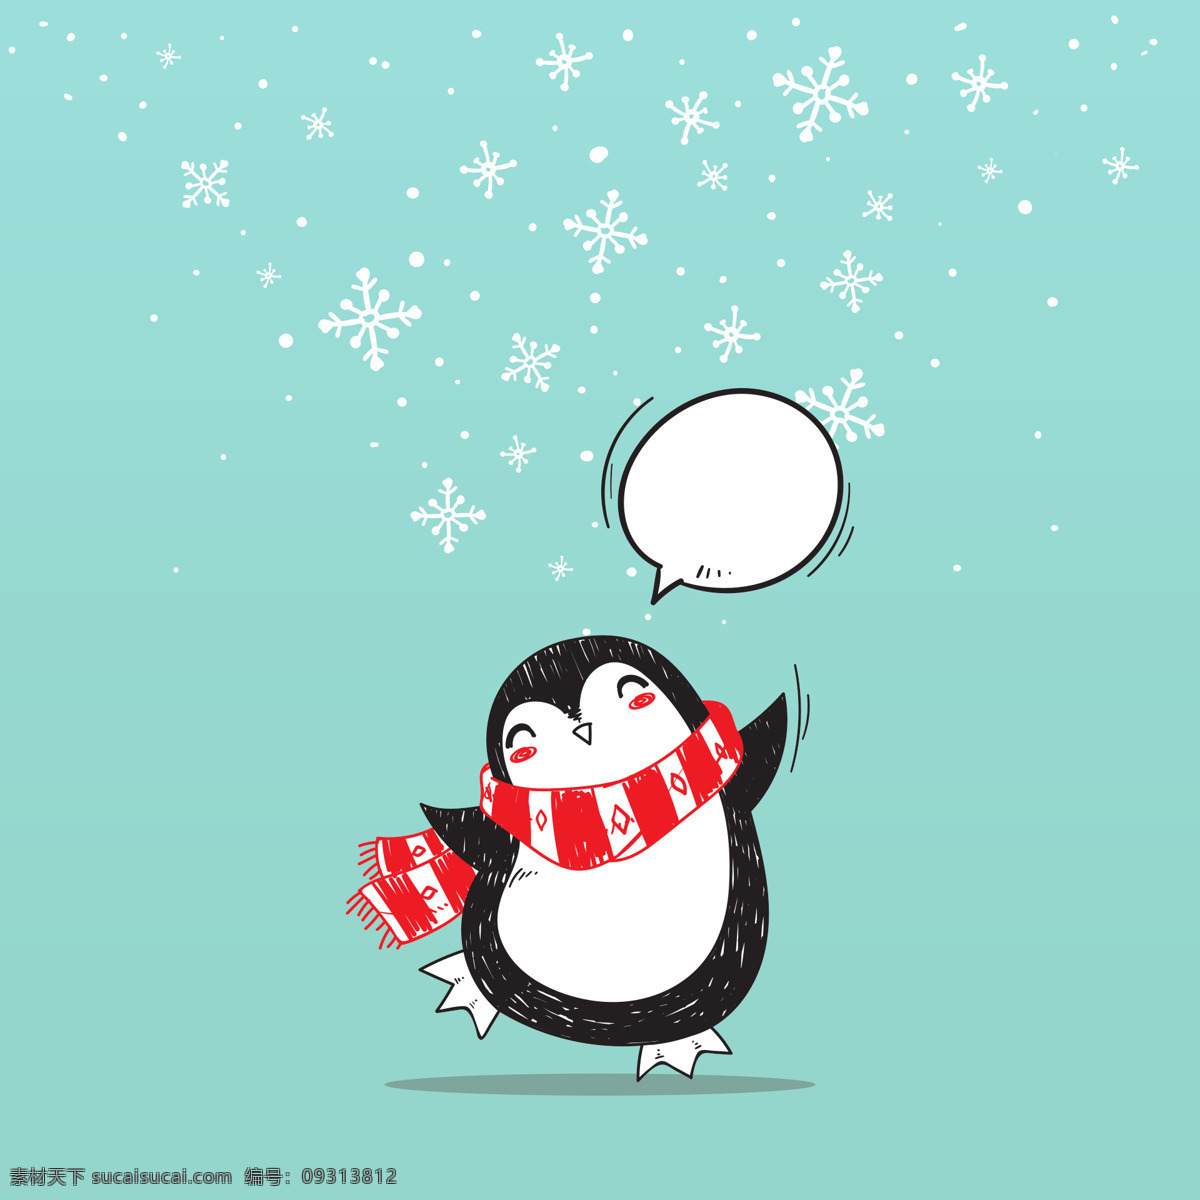 围巾企鹅 圣诞节 企鹅 新年除夕 雪花 丰厚的回报 可爱 围巾 动物 卡通动物 卡通设计